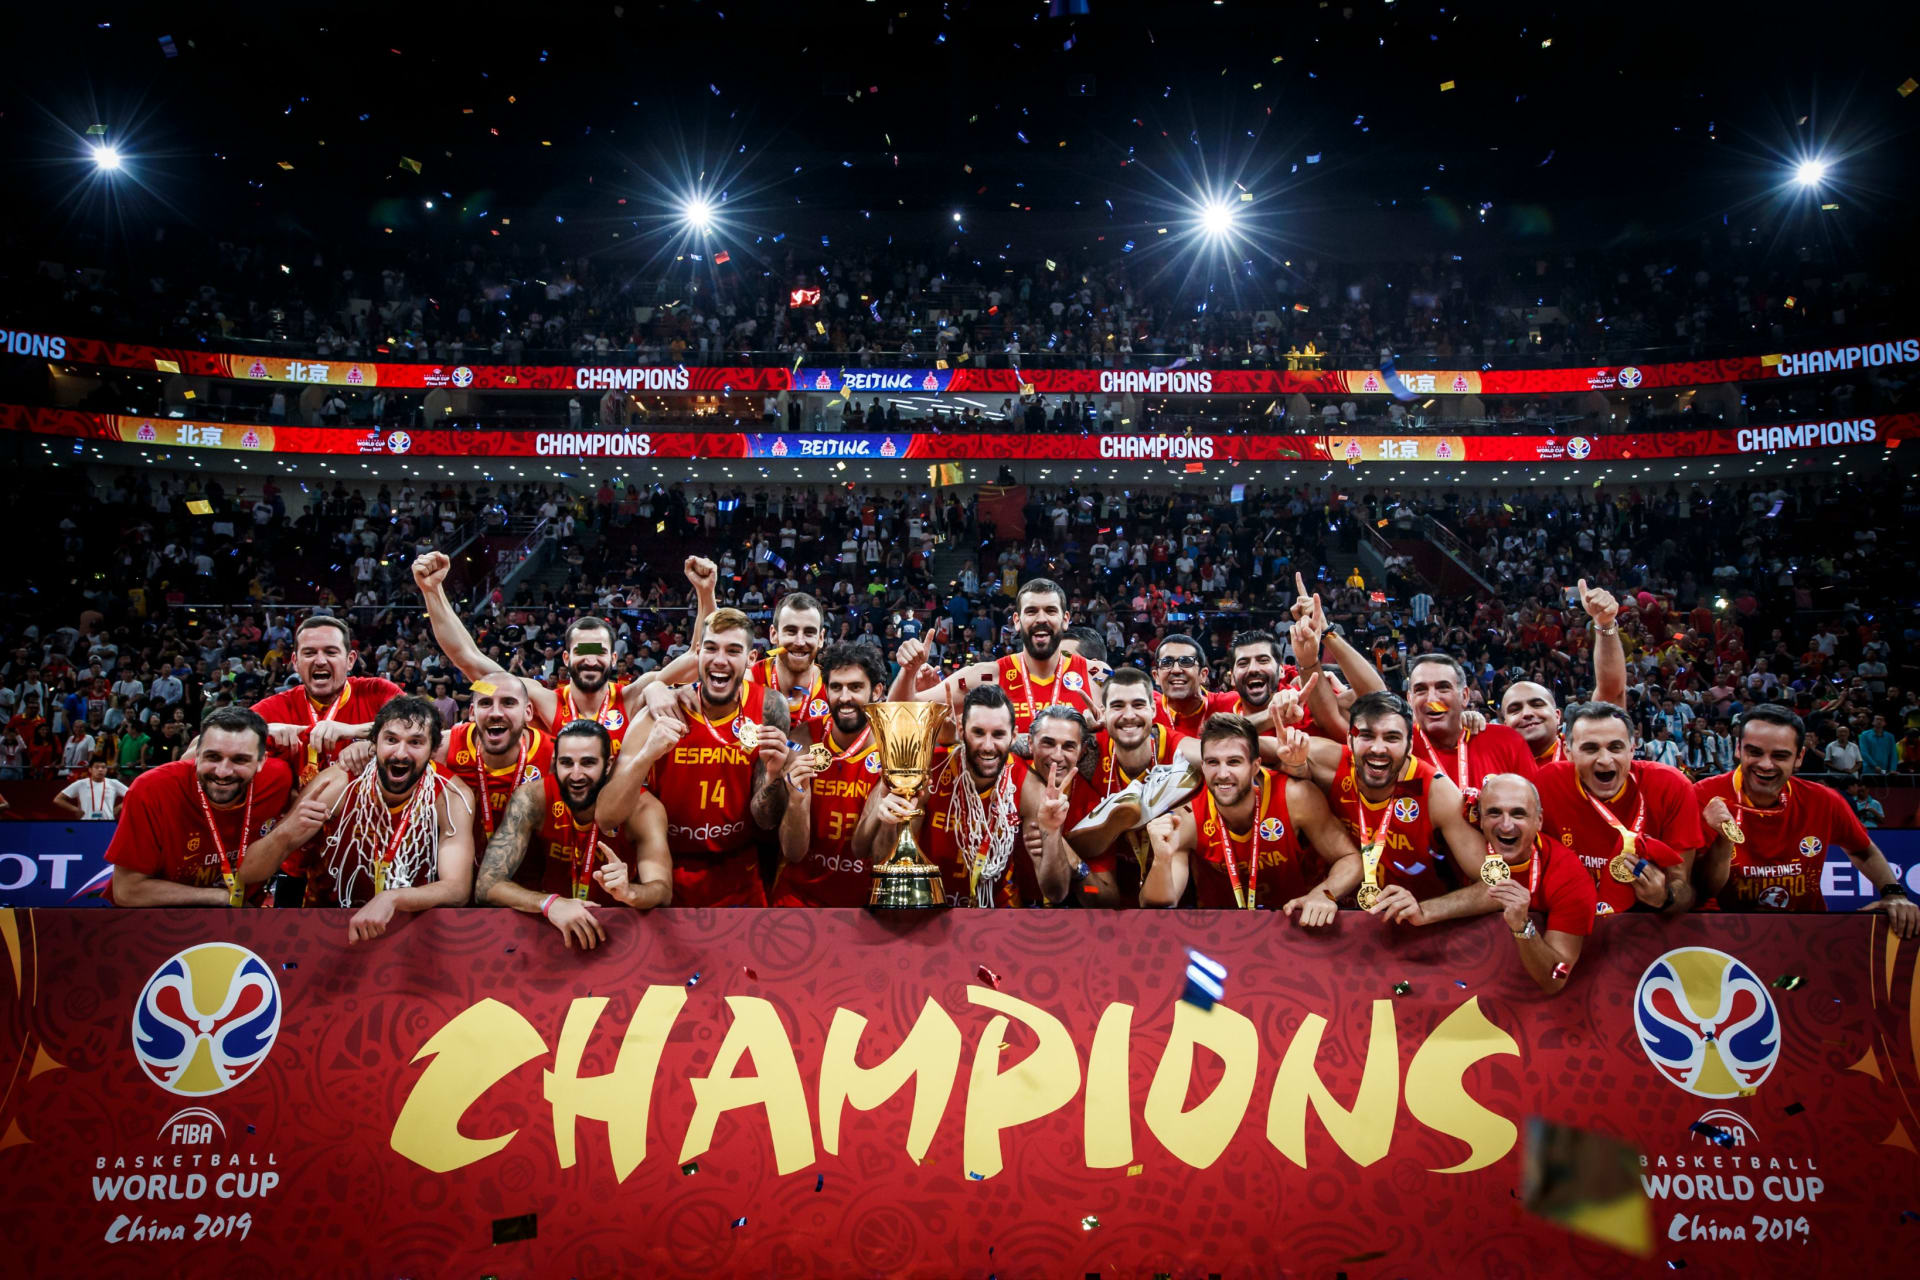 إسبانيا تفوز ببطولة العالم لكرة السلة للمرة الثانية في تاريخها